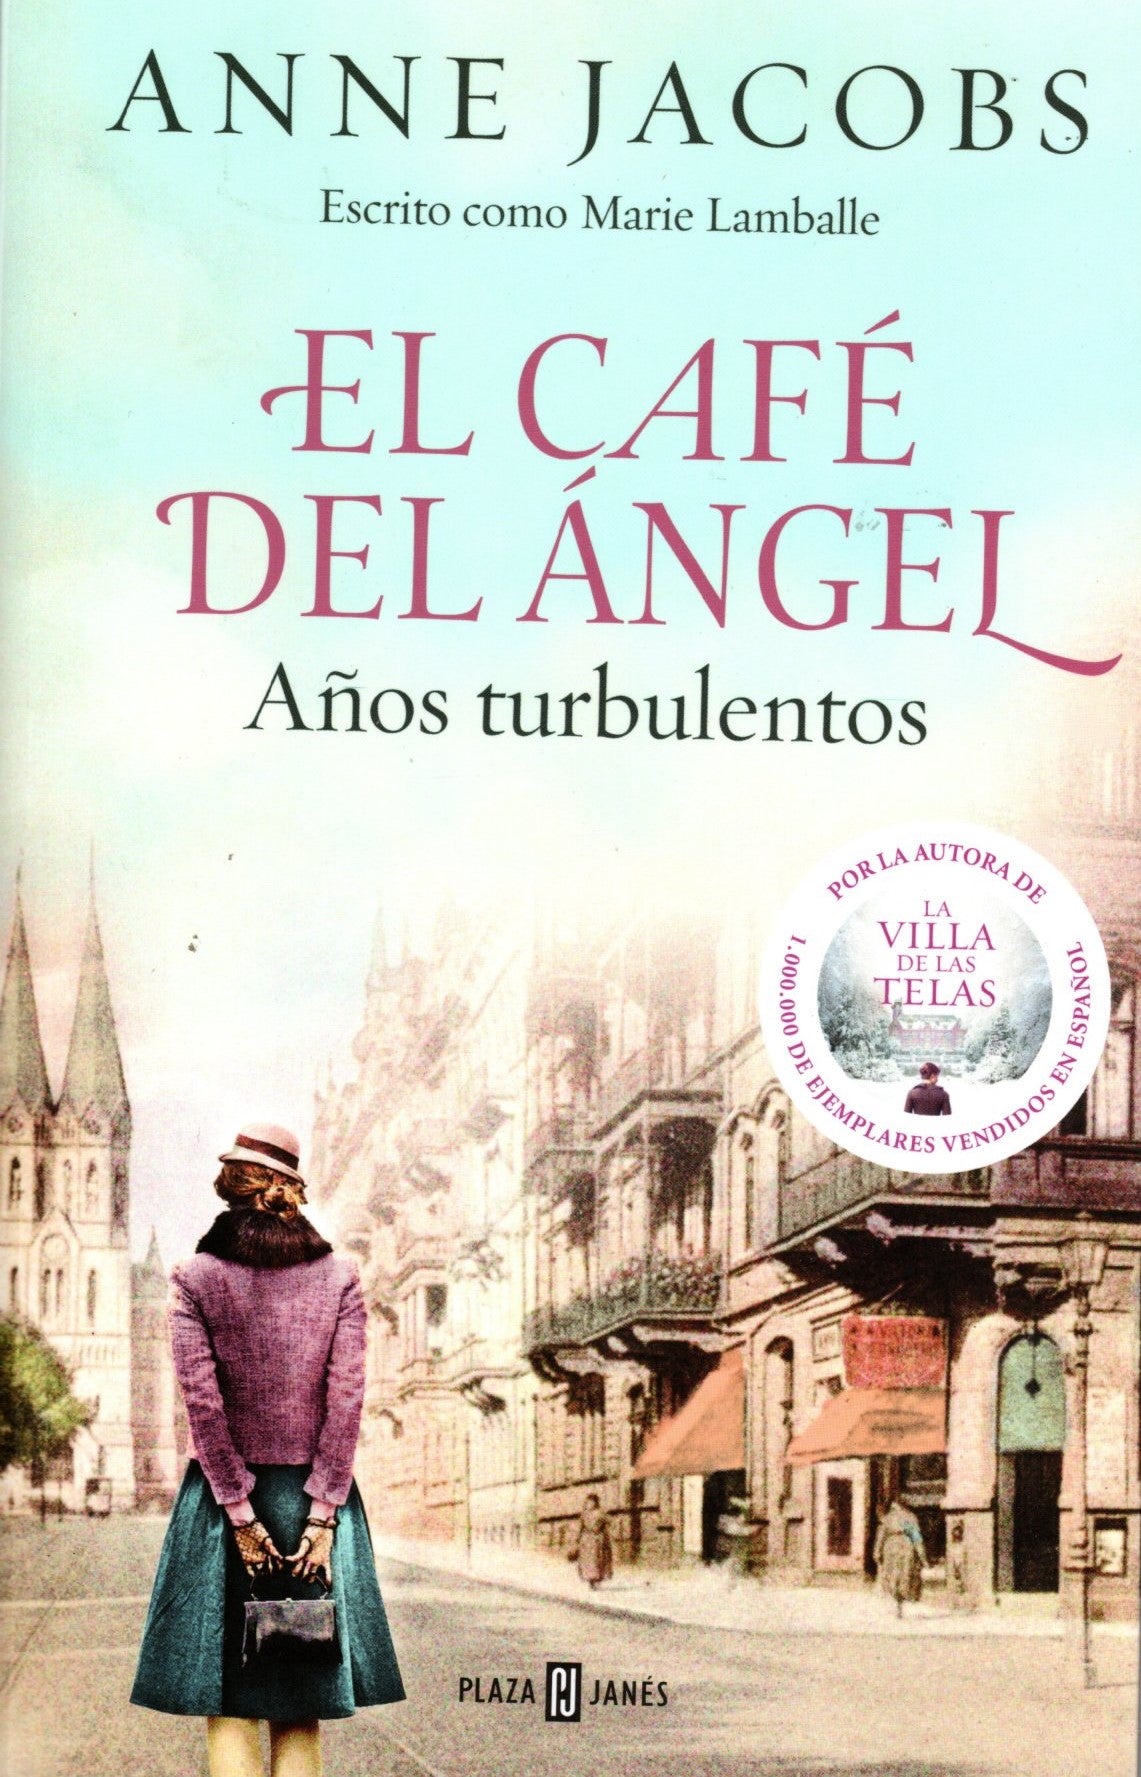 Libro Anne Jacobs - El Café del Ángel. Años turbulentos 2